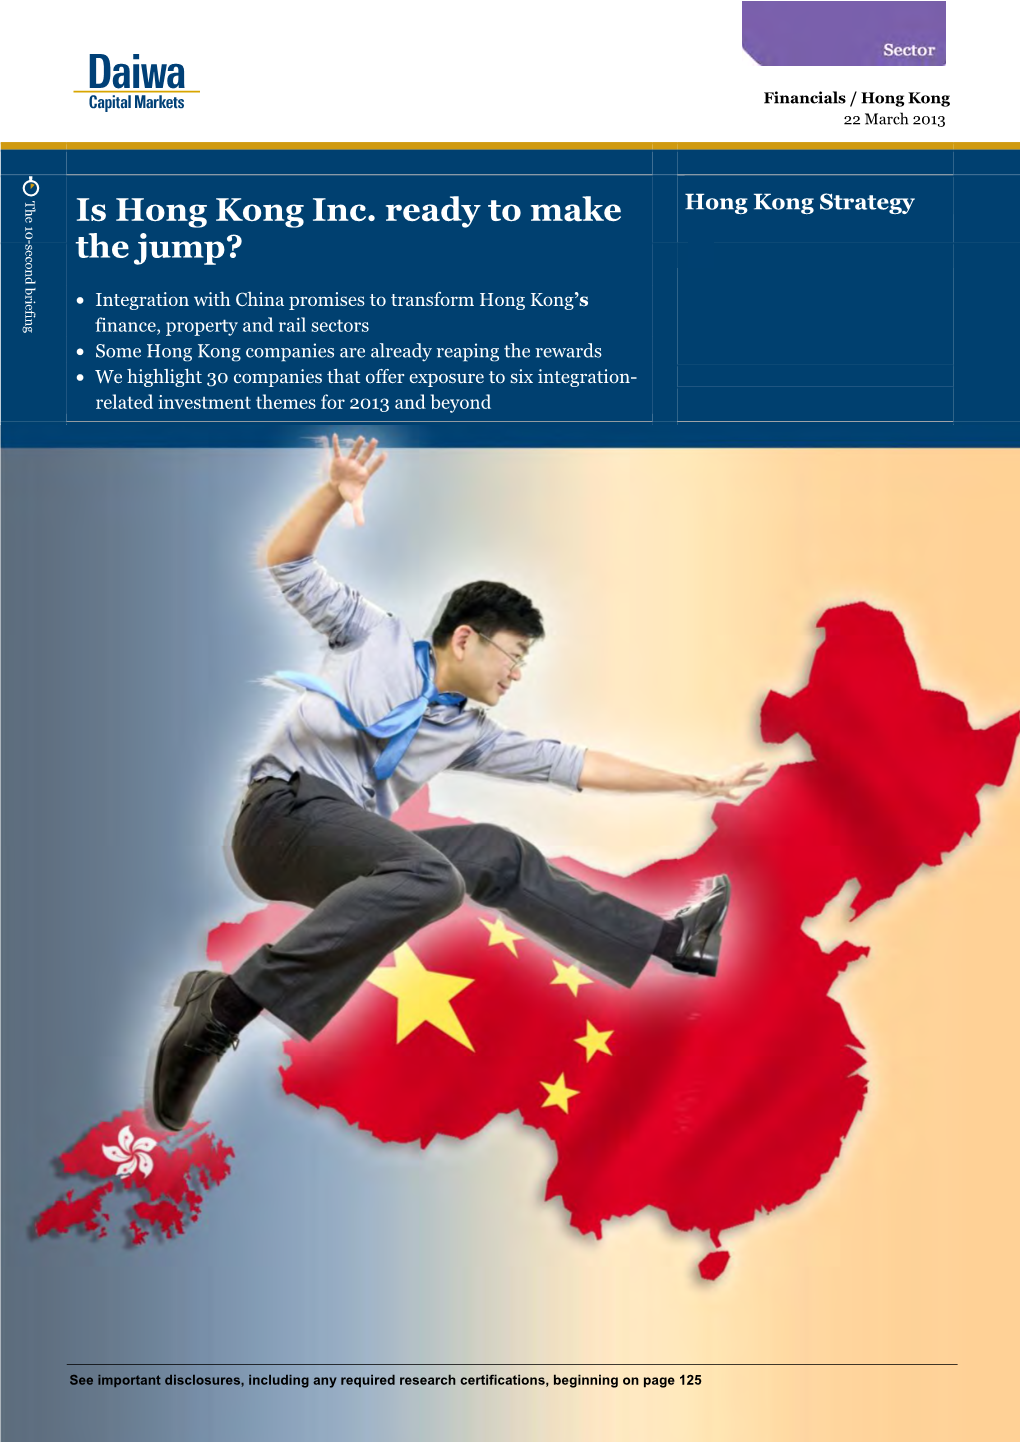 Is Hong Kong Inc. Ready to Make the Jump?